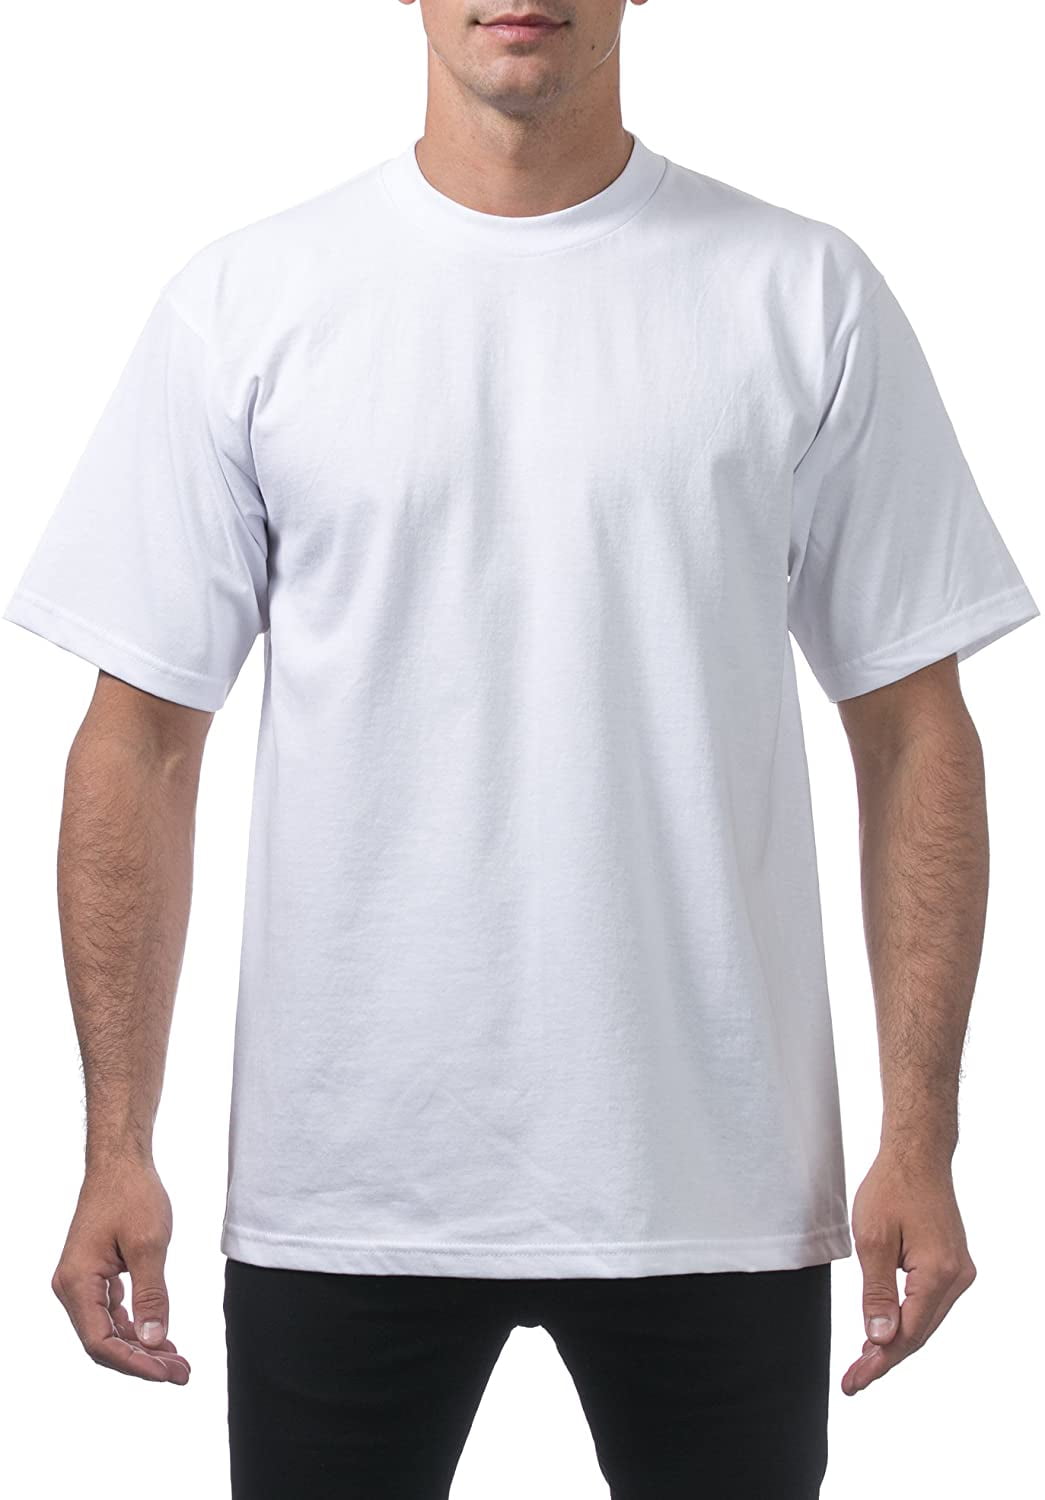 Mens Tshirt Crew Neck T-Shirt T Shirt Top Plain Cotton Short Sleeve Summer Pack